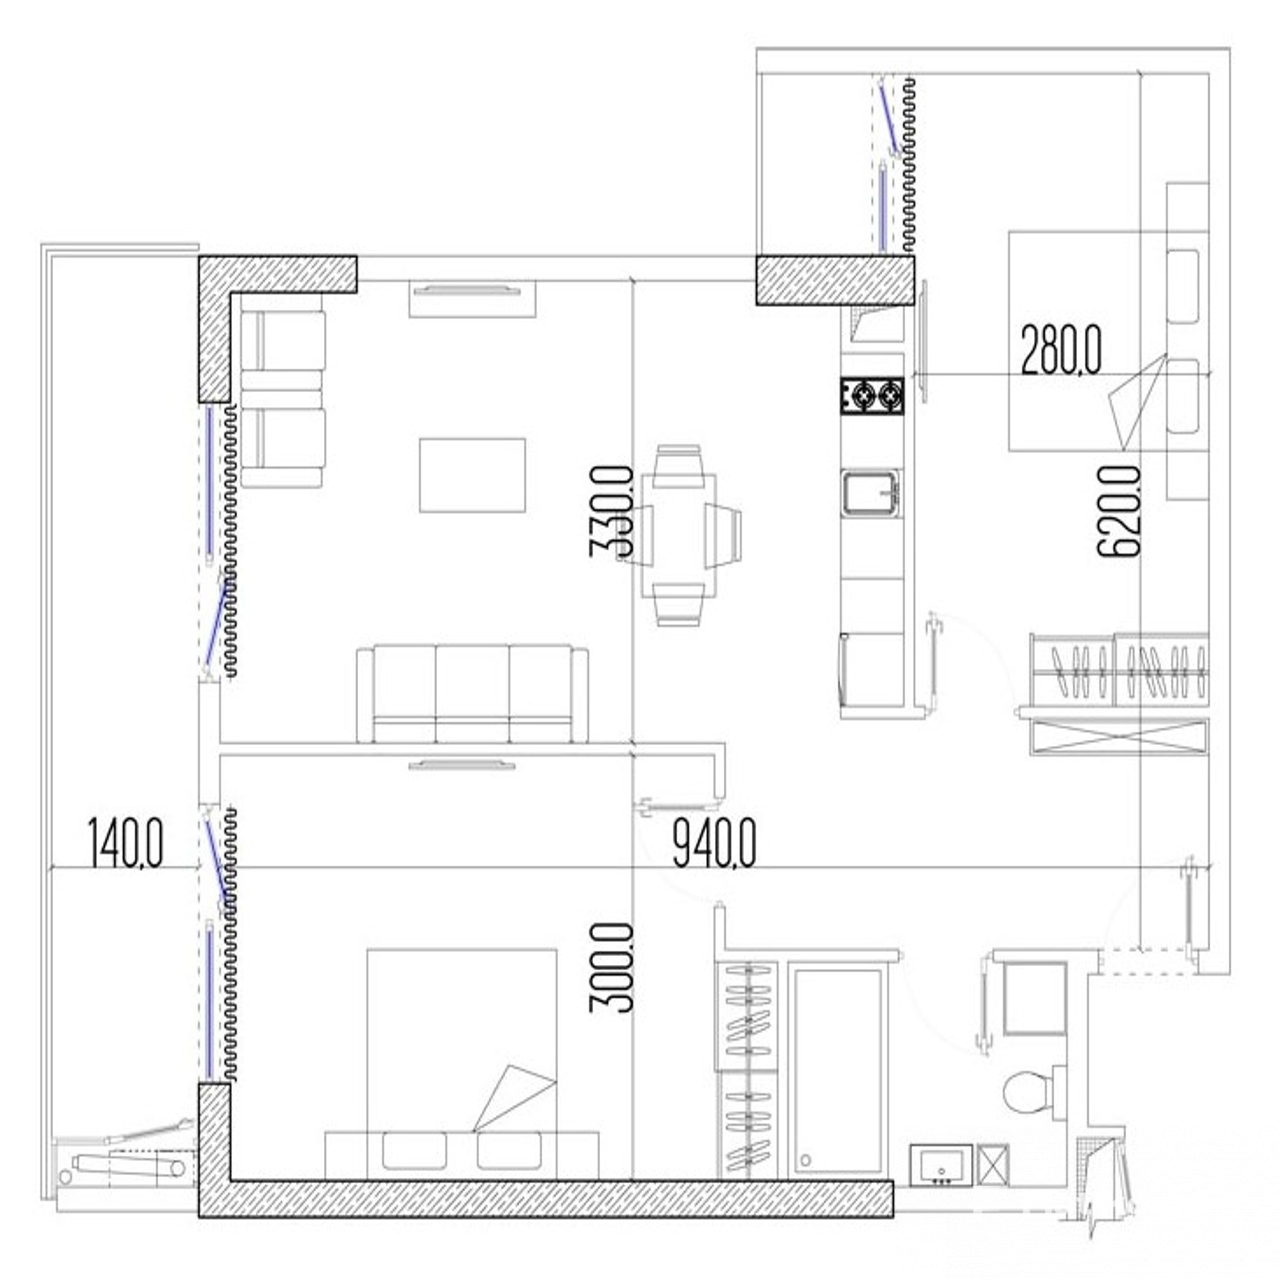 2-Bedroom Block B